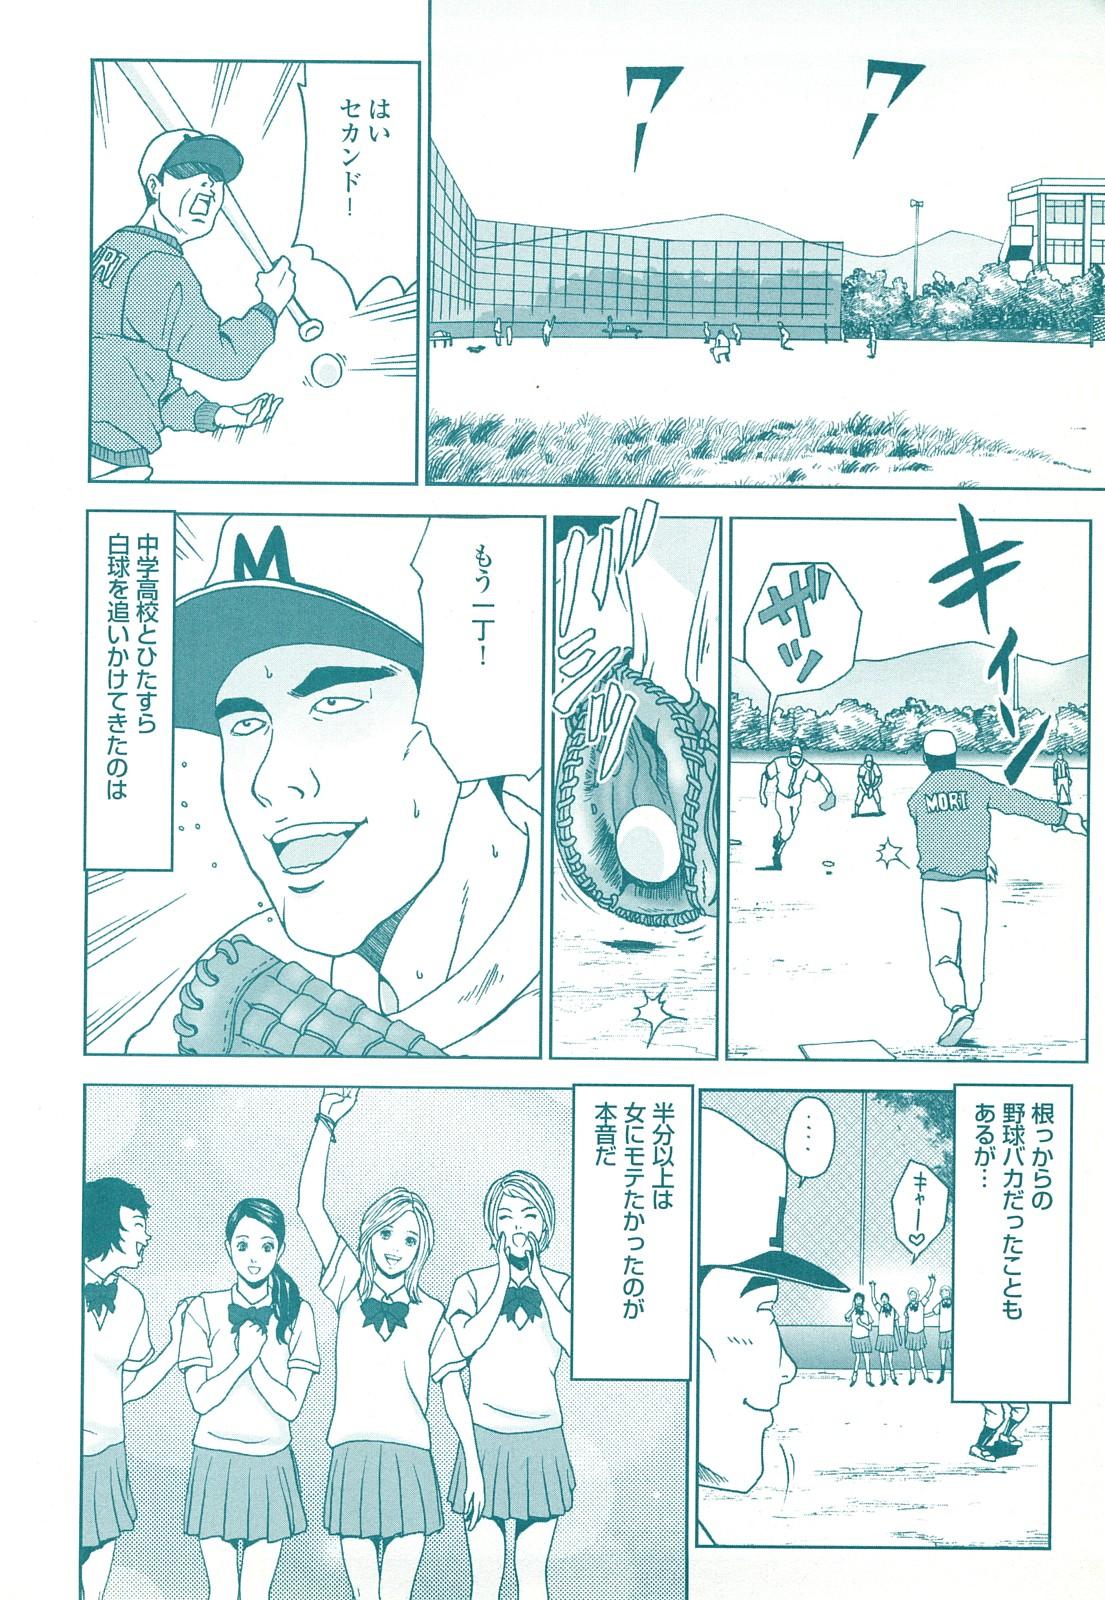 コミック裏モノJAPAN Vol.18 今井のりたつスペシャル号 141